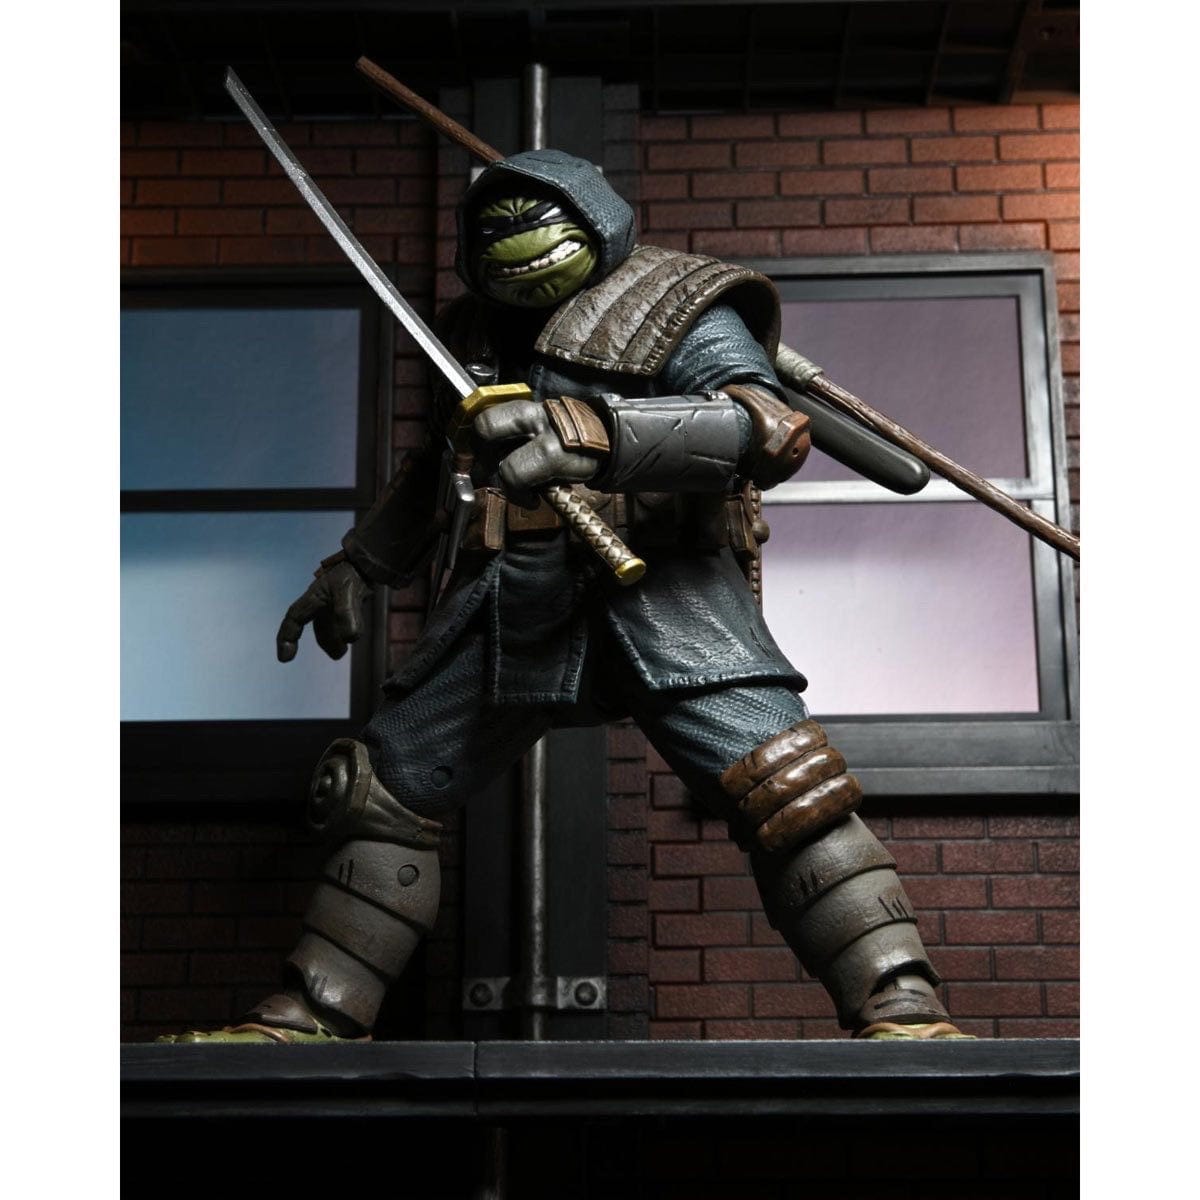 NECA Teenage Mutant Ninja Turtles Ultimate The Last Ronin Armored Action Figure